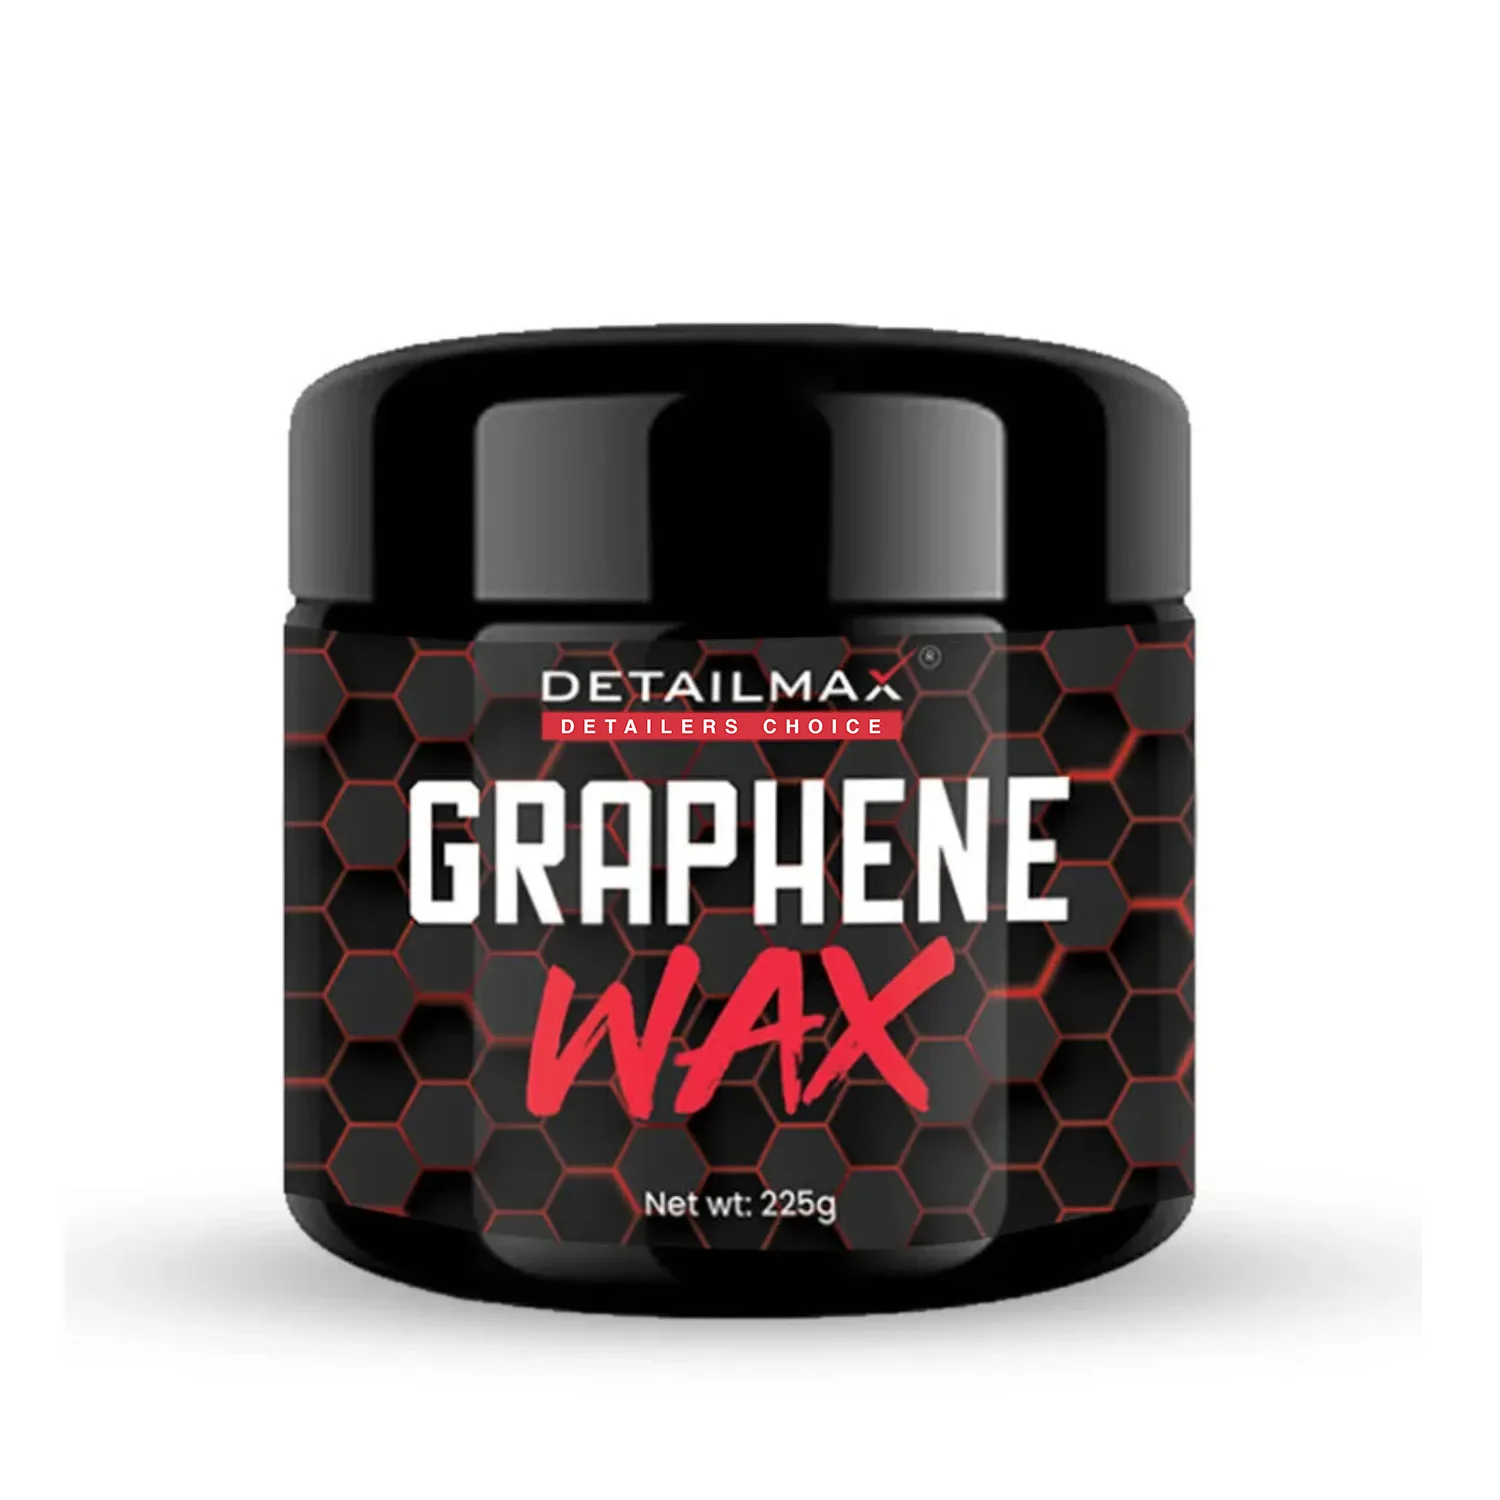 detailmax-graphene-paste-wax